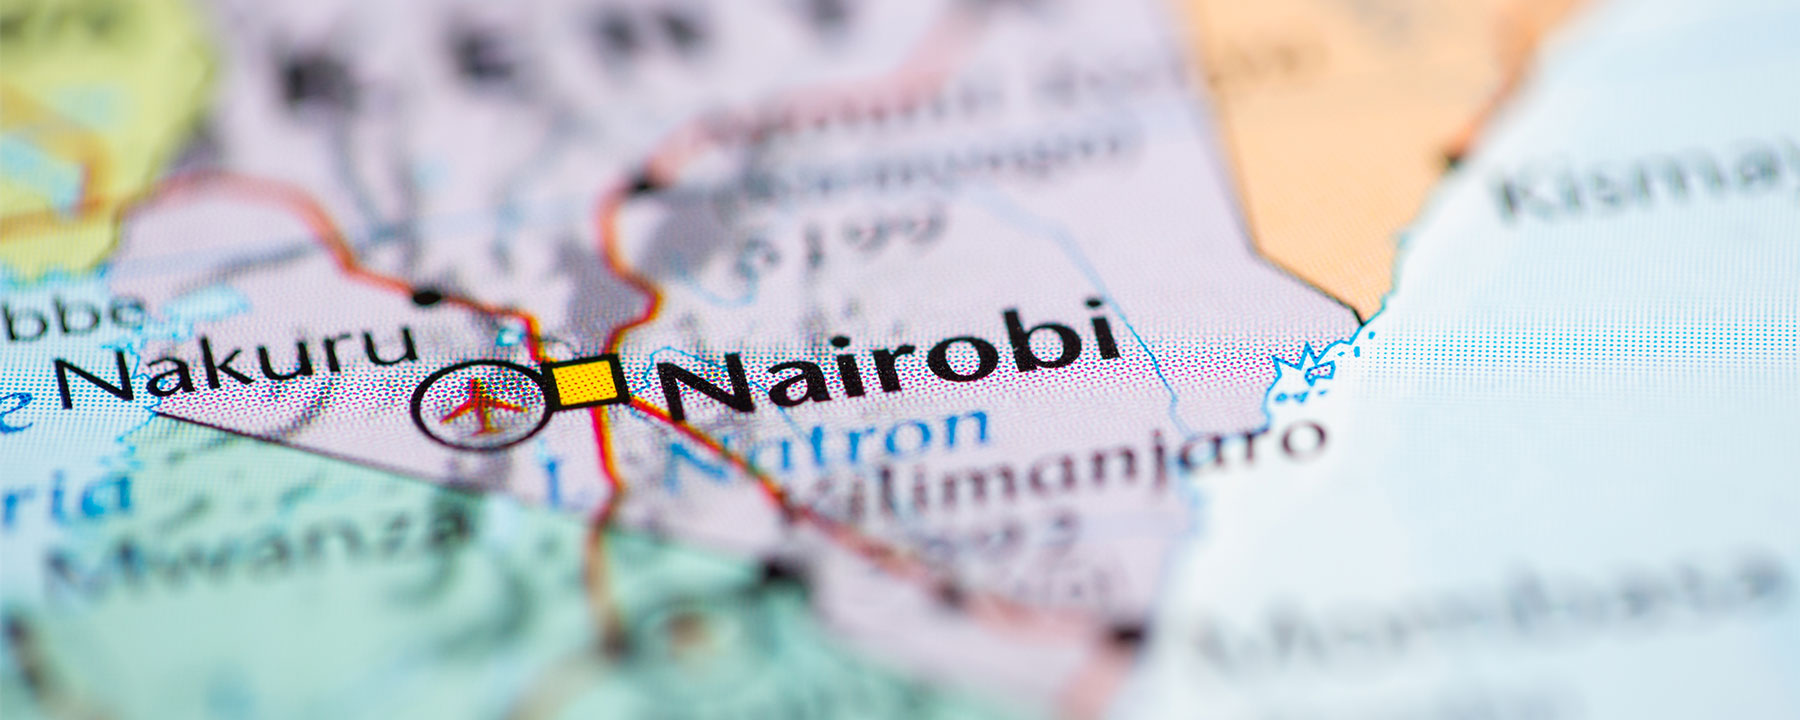 Nairobi on map